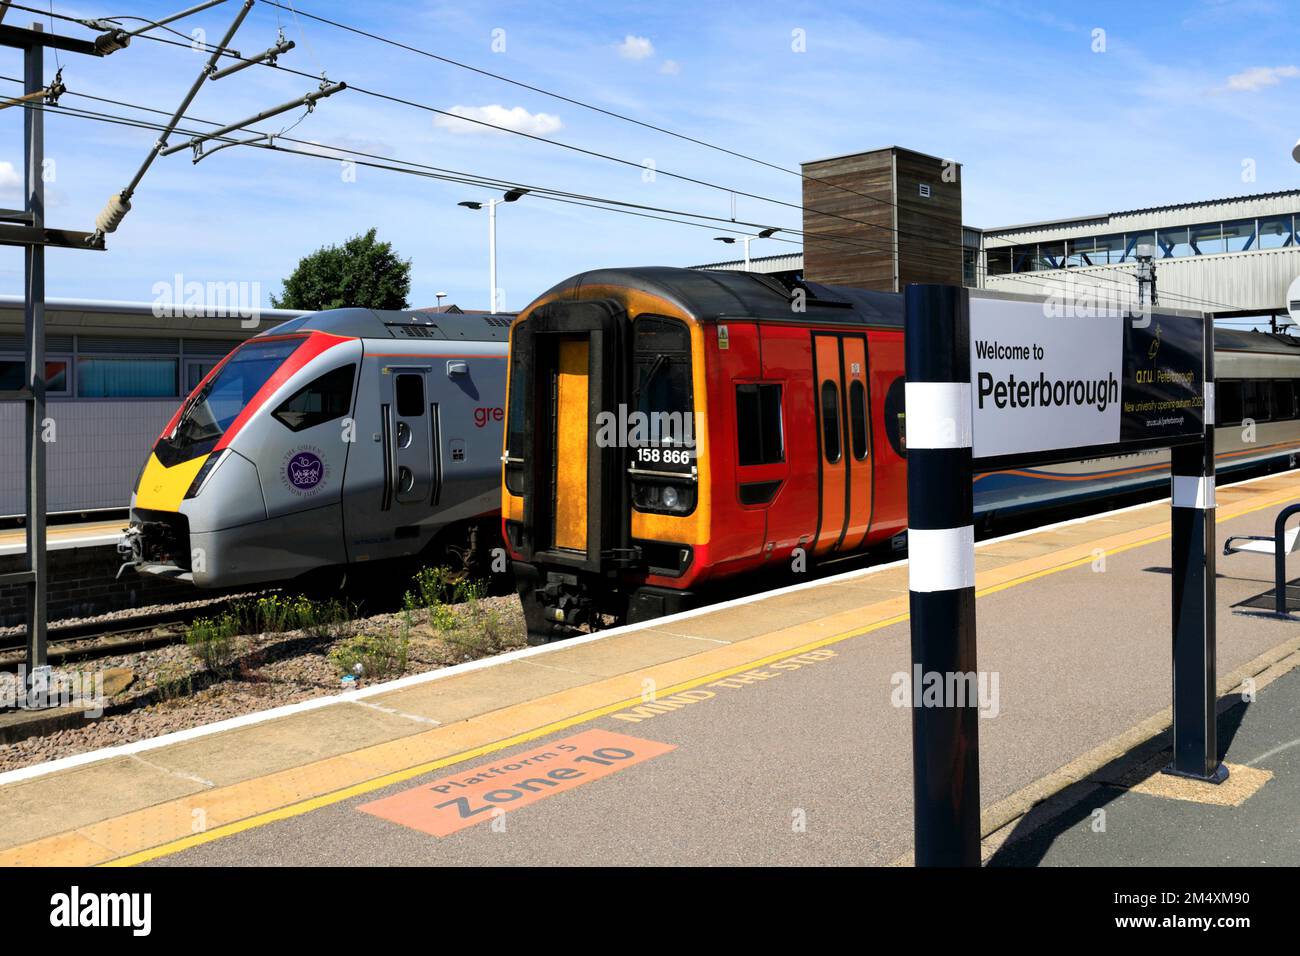 EMR trains 158866 à la gare de Peterborough, East Coast main Line Railway; Cambridgeshire, Angleterre, Royaume-Uni Banque D'Images